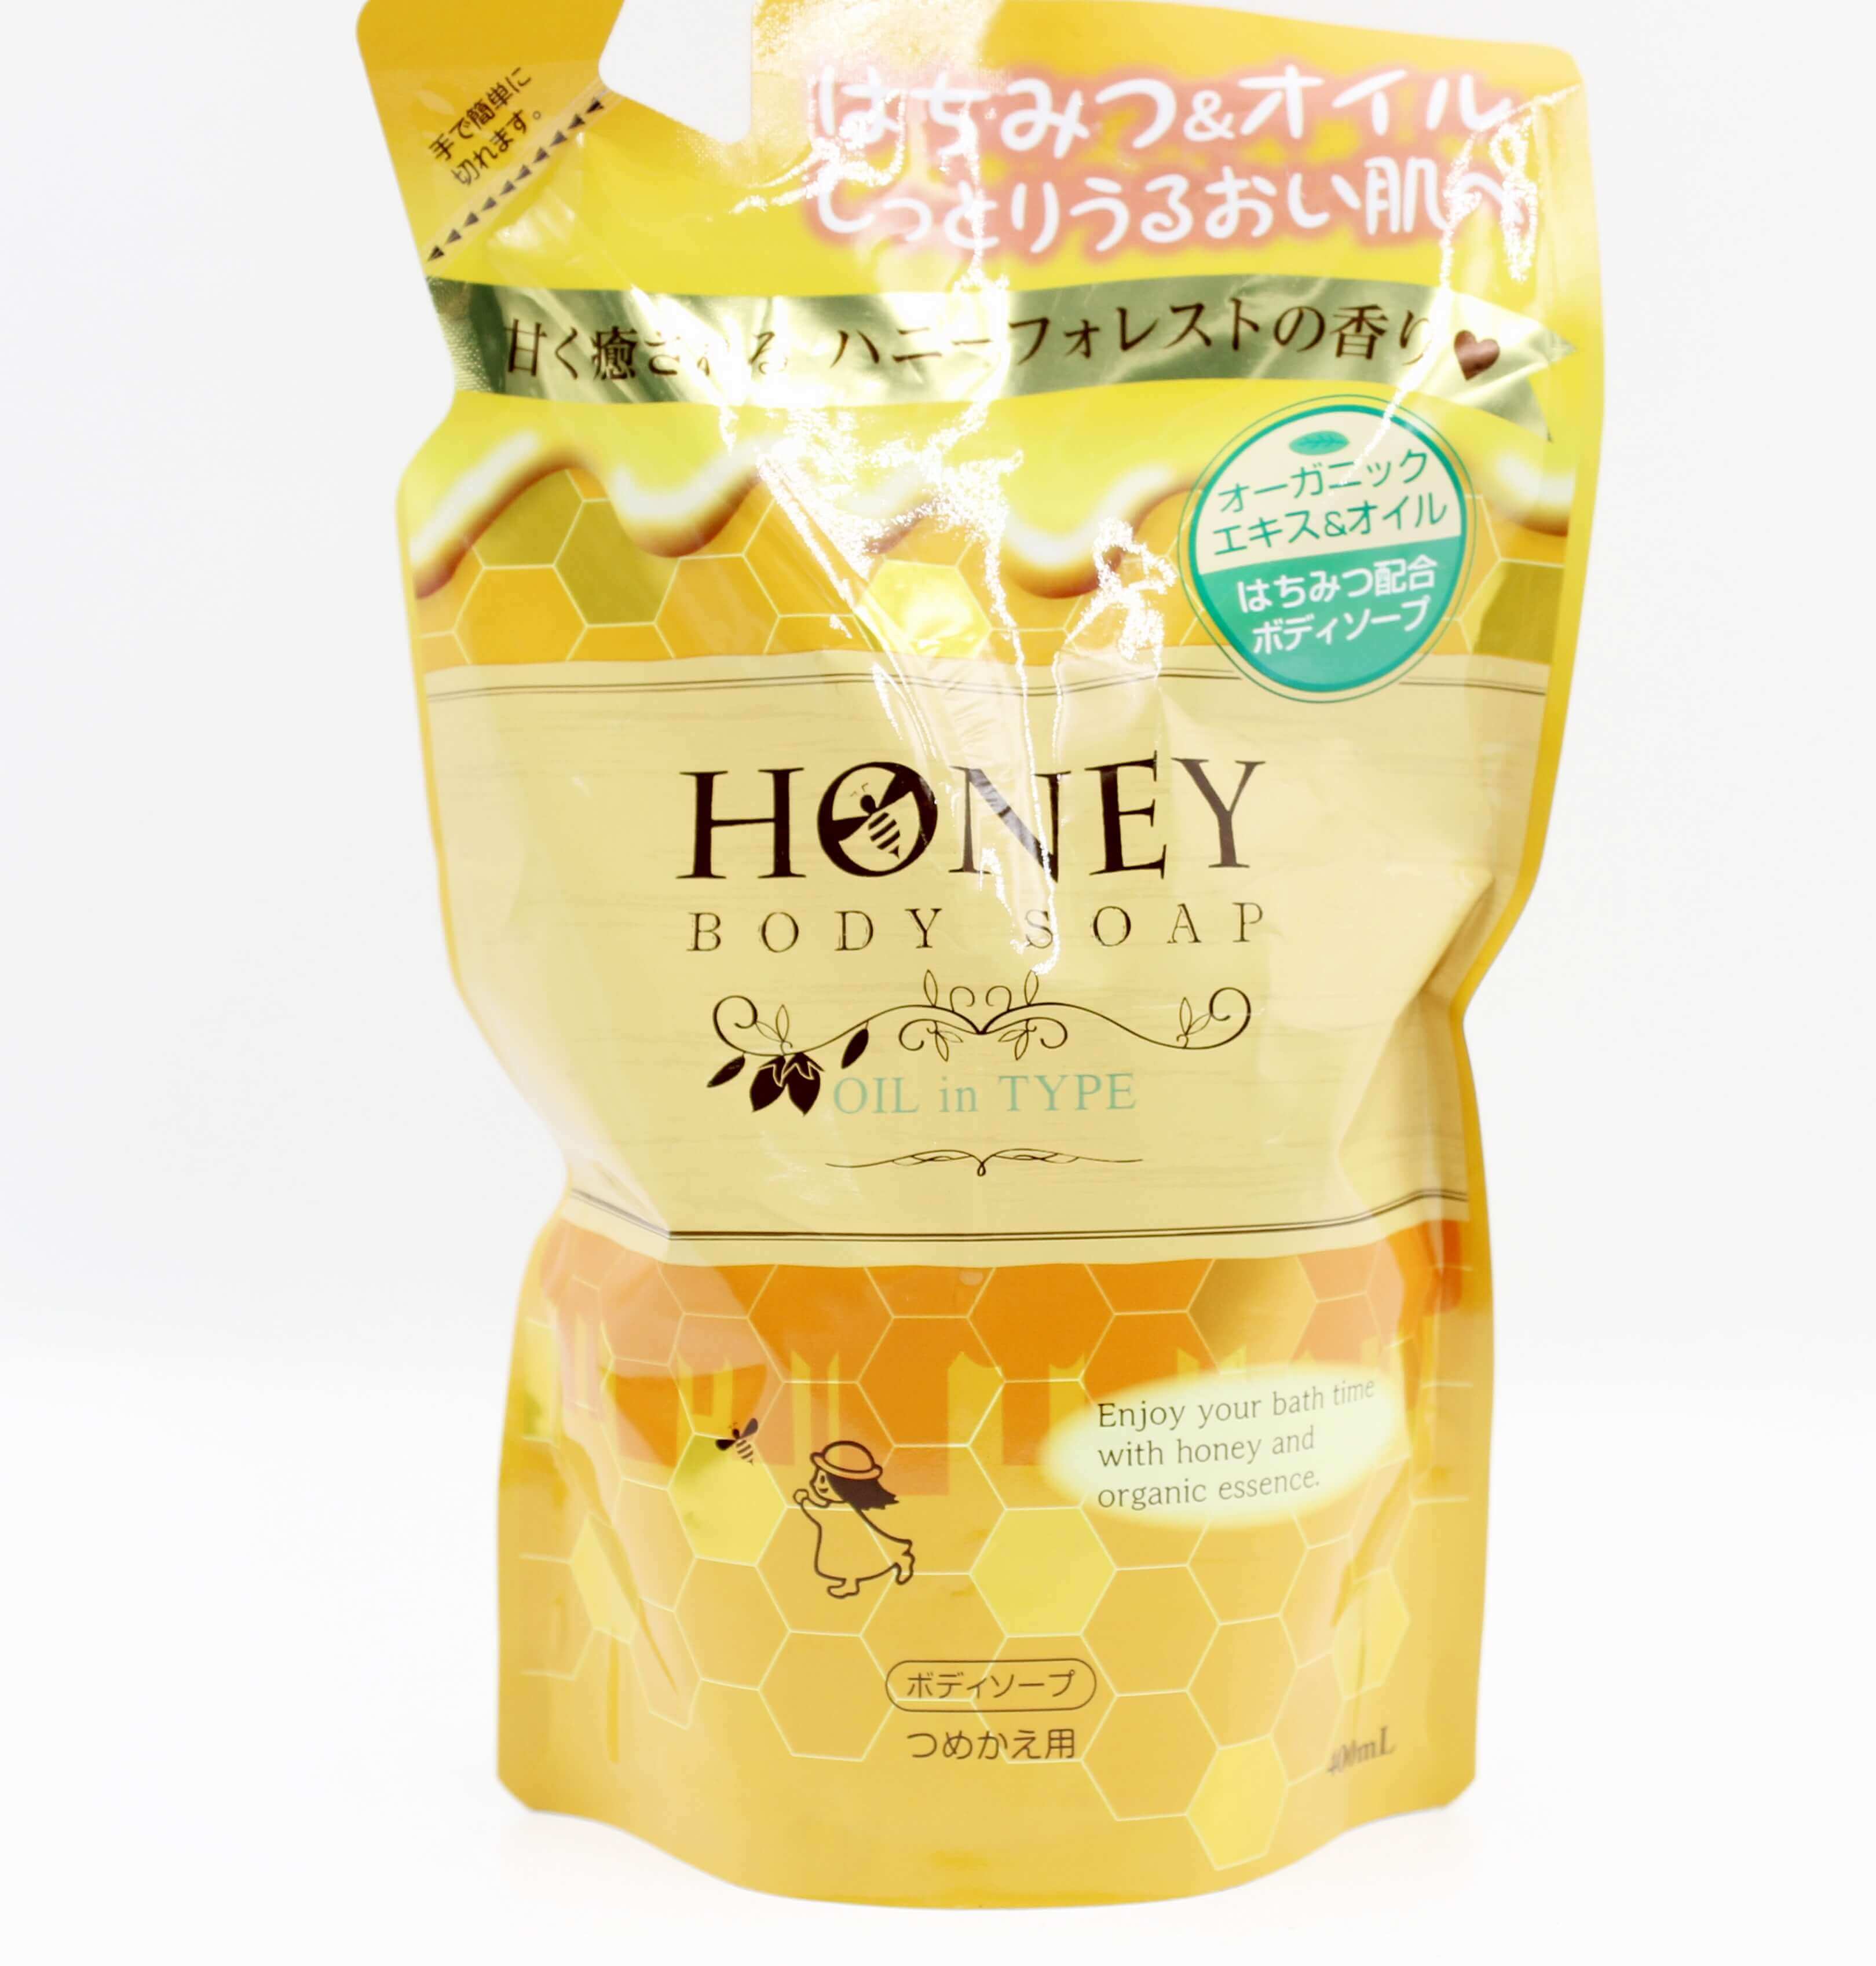 Sữa tắm Honey dưỡng ẩm, làm mịn dạng gel (loại túi)